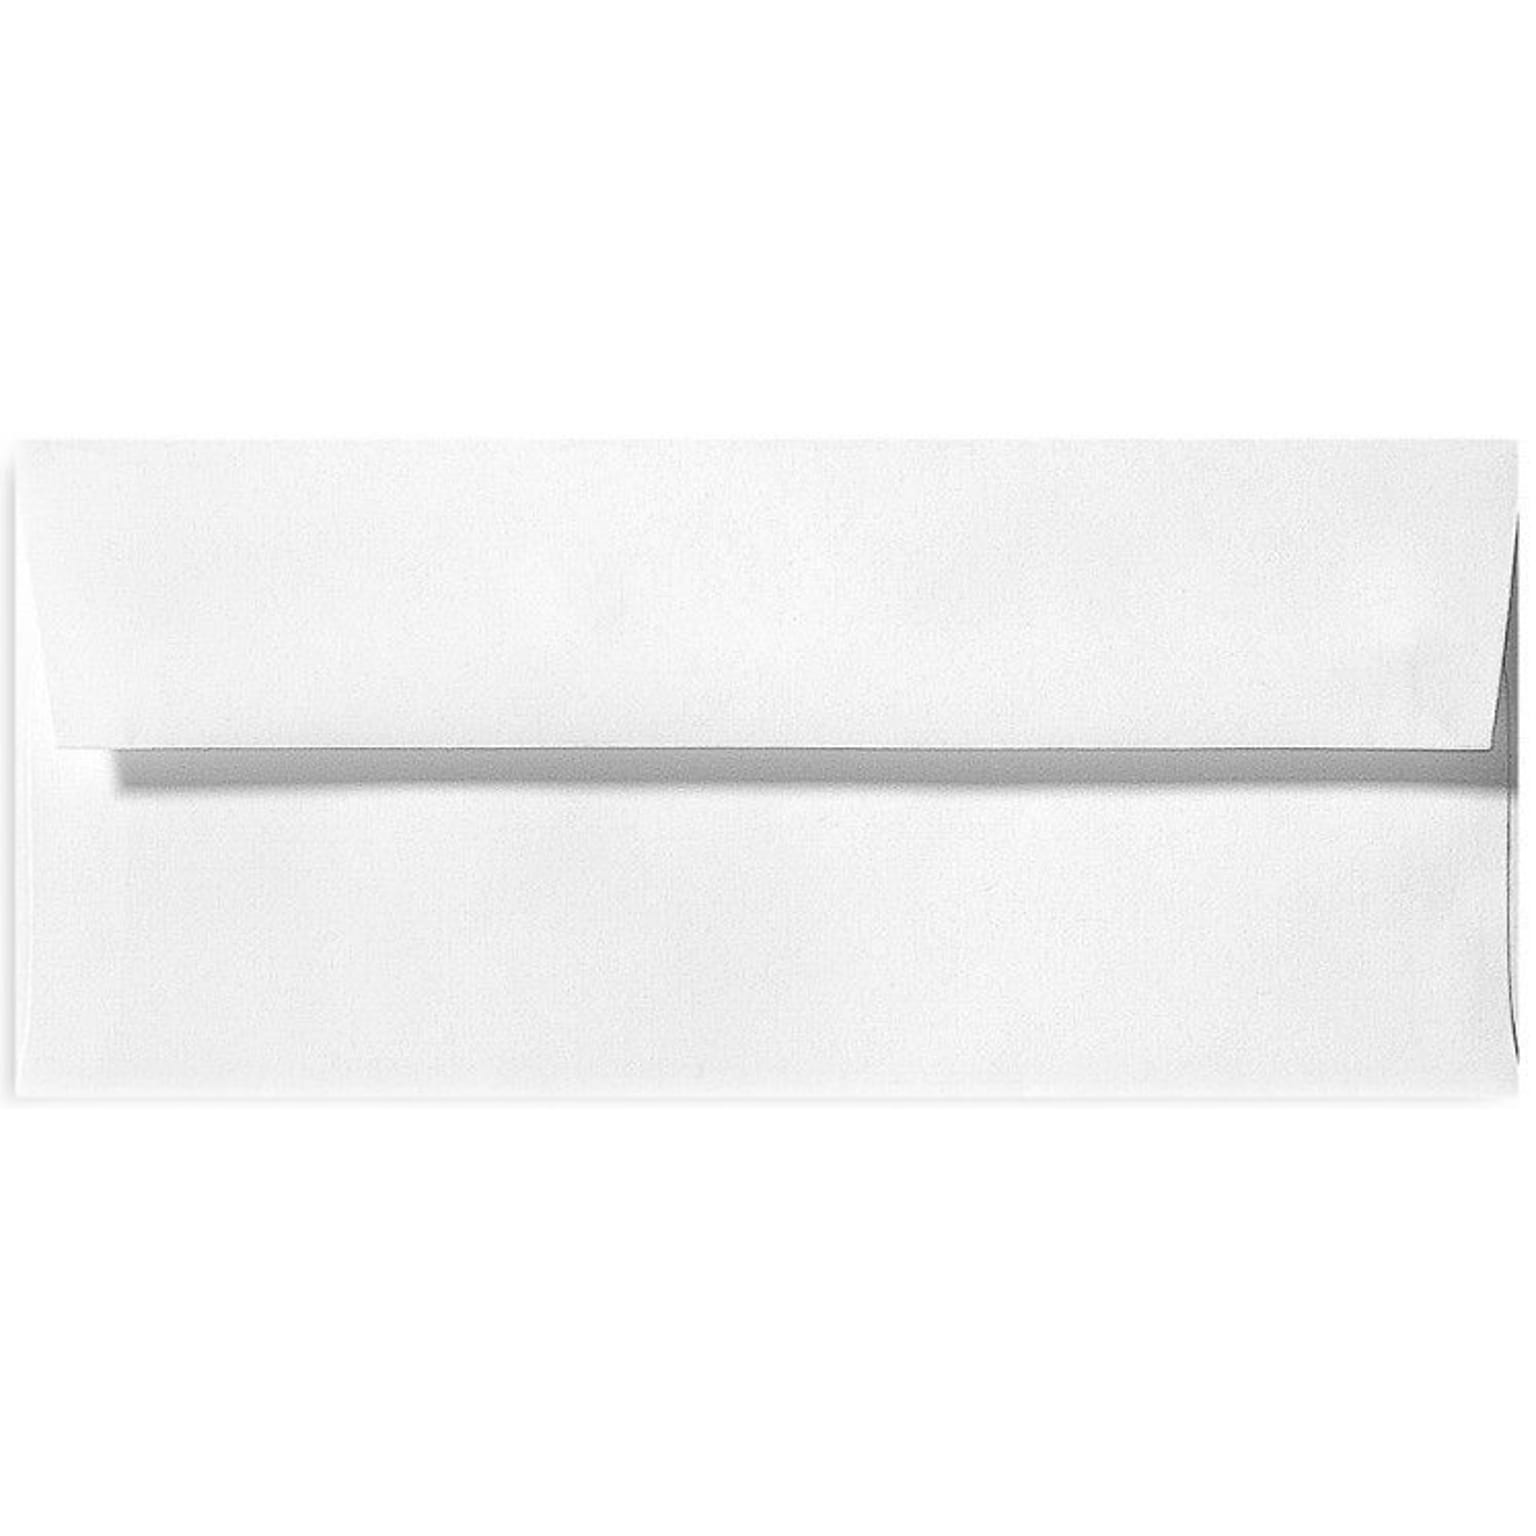 LUX 70lb 4 1/8x9 1/2 Square Flap Linen Envelopes, White, 500/BX